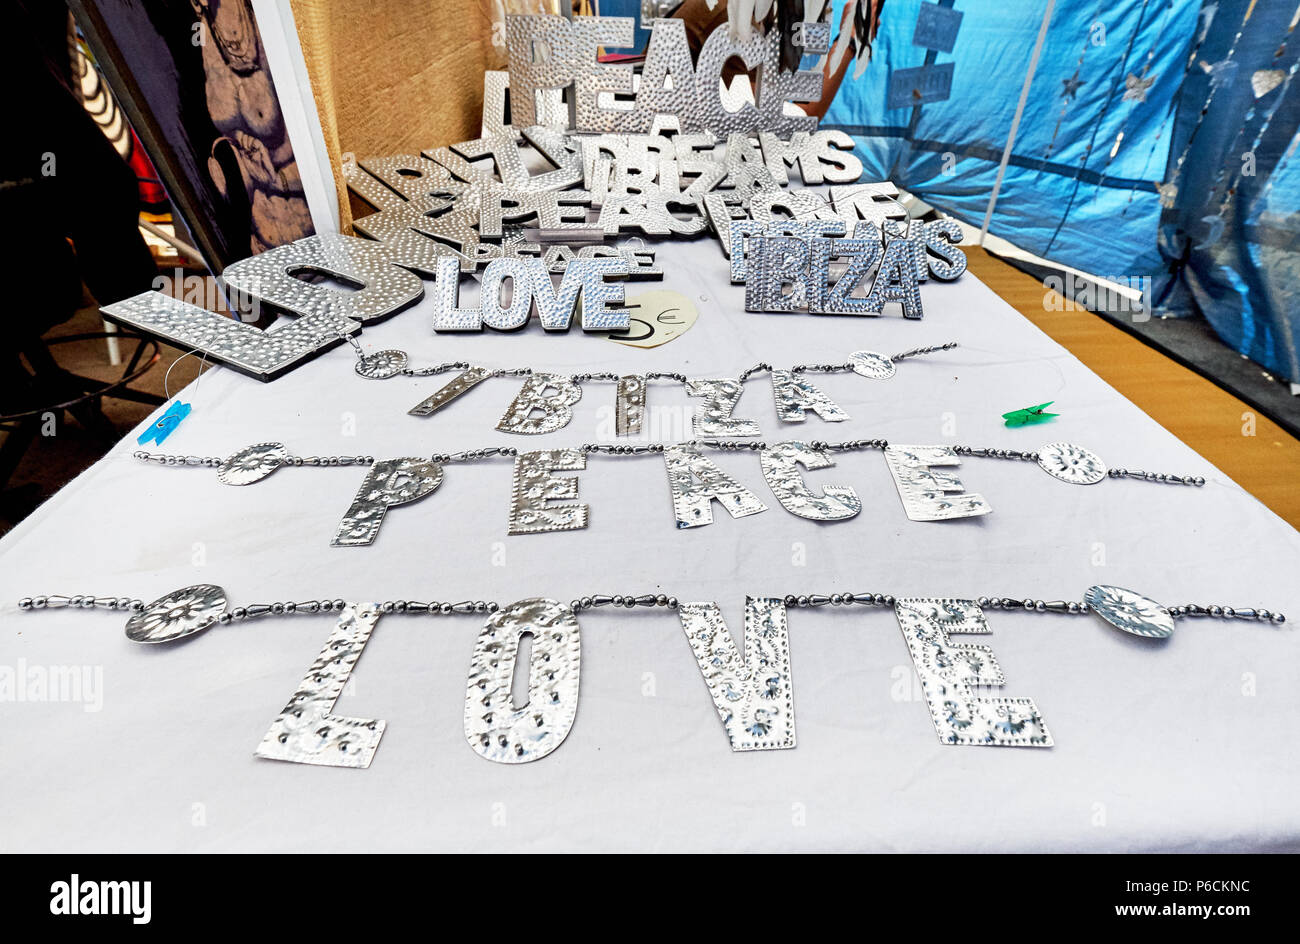 Isola di Ibiza, Spagna - 2 Maggio 2018: Decorative handmade parole d'argento - Ibiza, di amore e di pace al mercato hippy. Mercato hippy organizzata fin dal 1970 Foto Stock